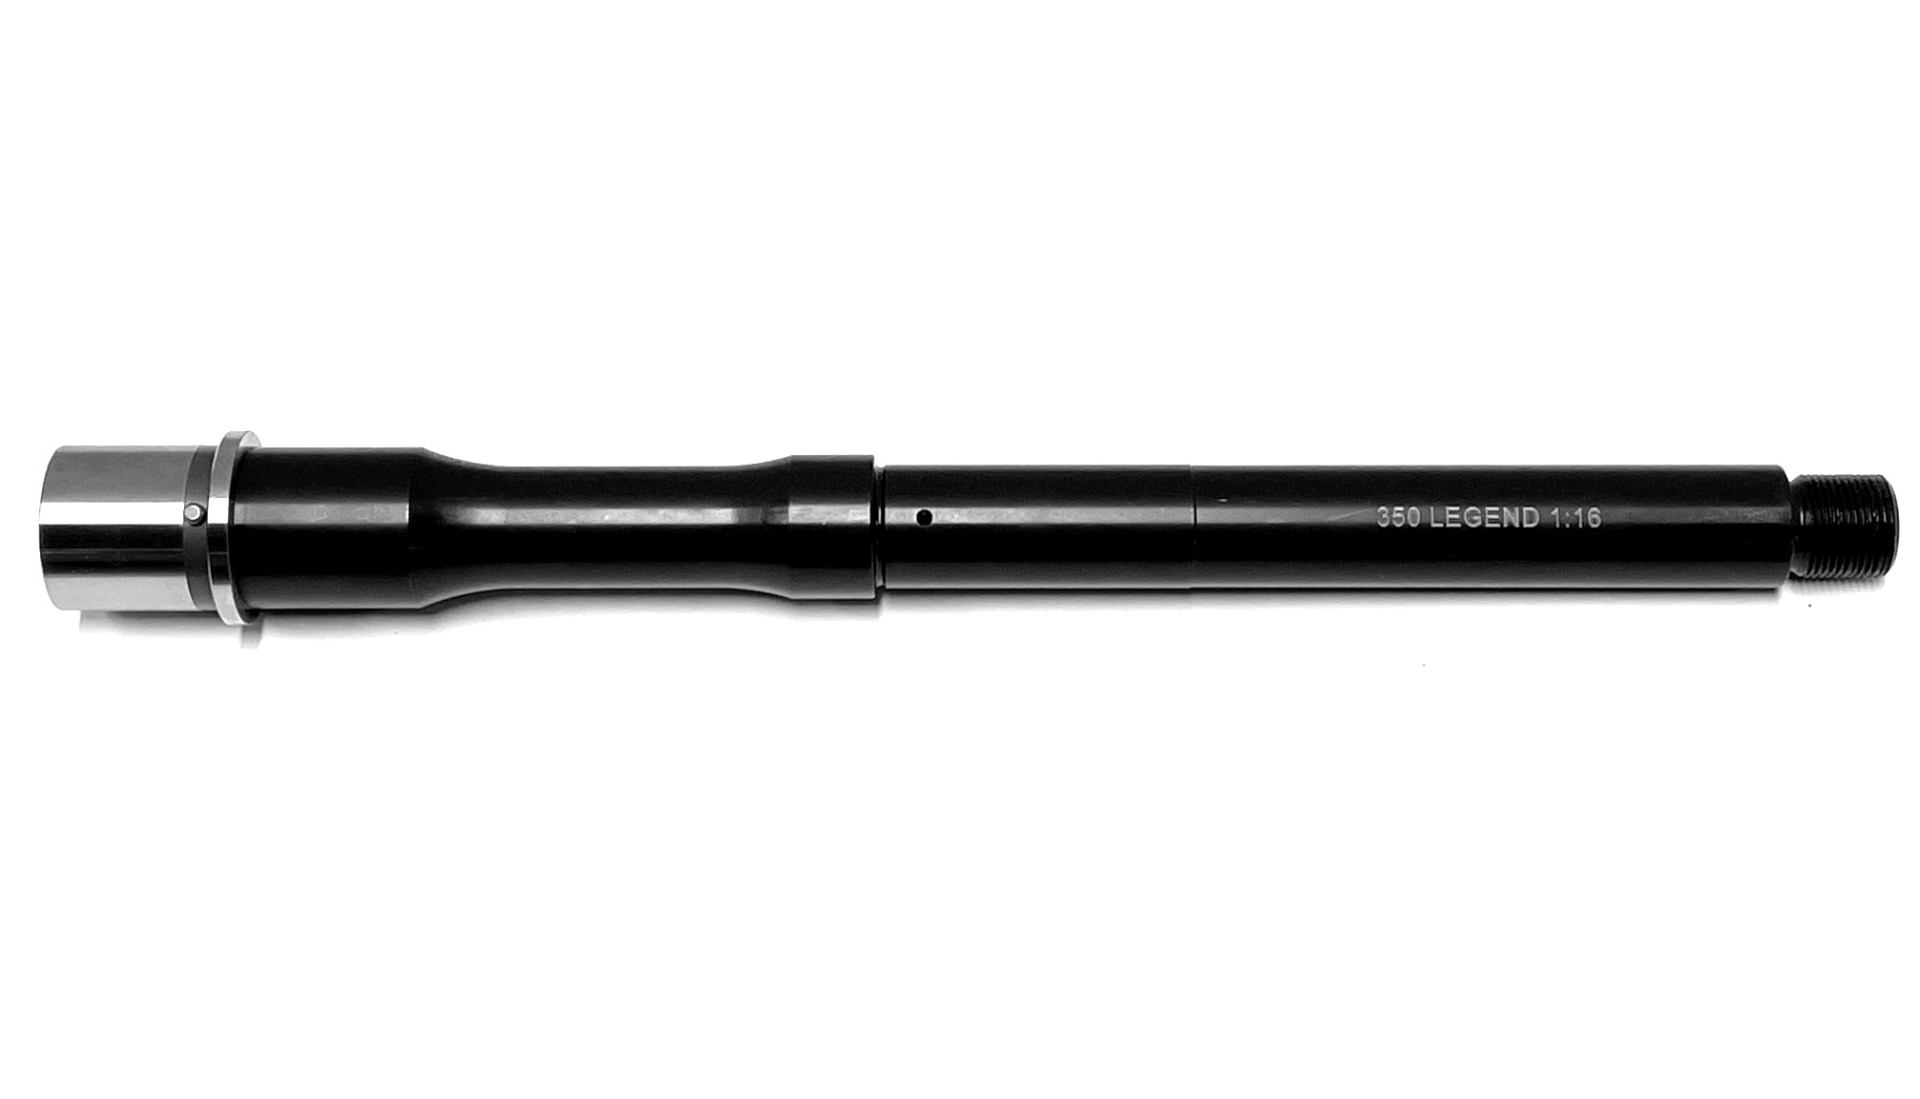 Tactical Kinetics AR-15 10.5 inch 350 Legend Melonite Barrel